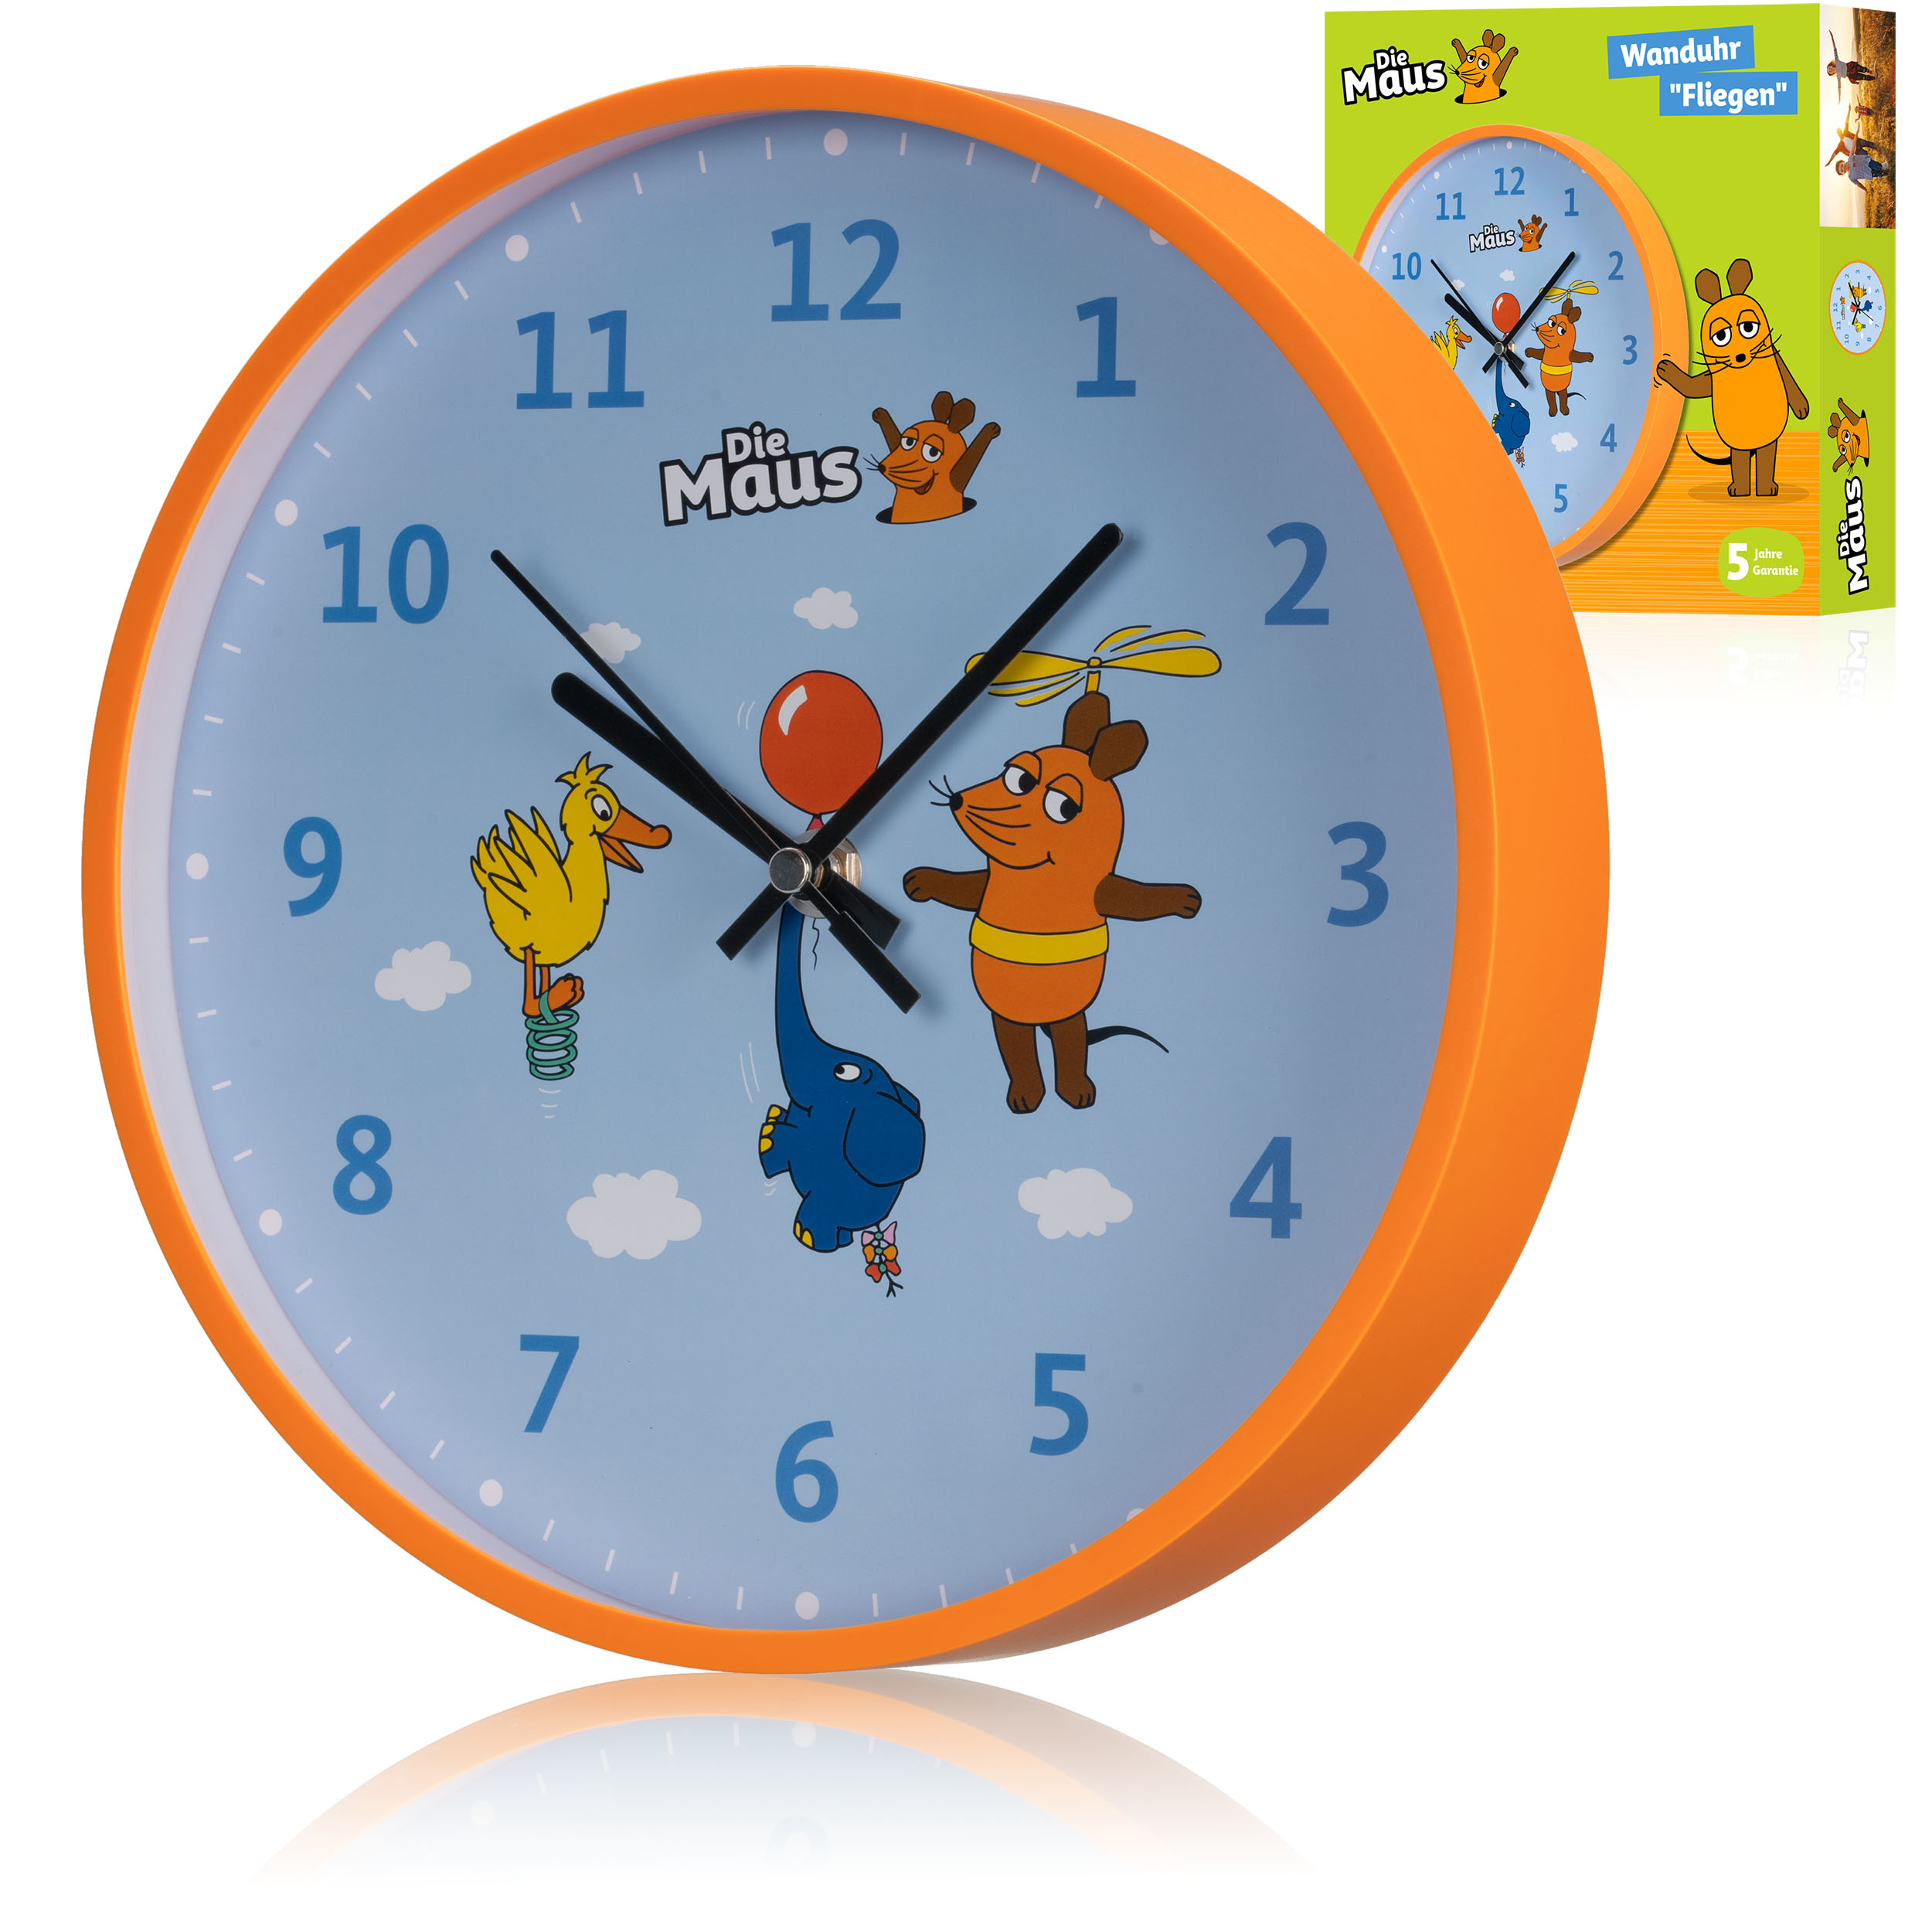 Horloge murale pour enfants DieMaus